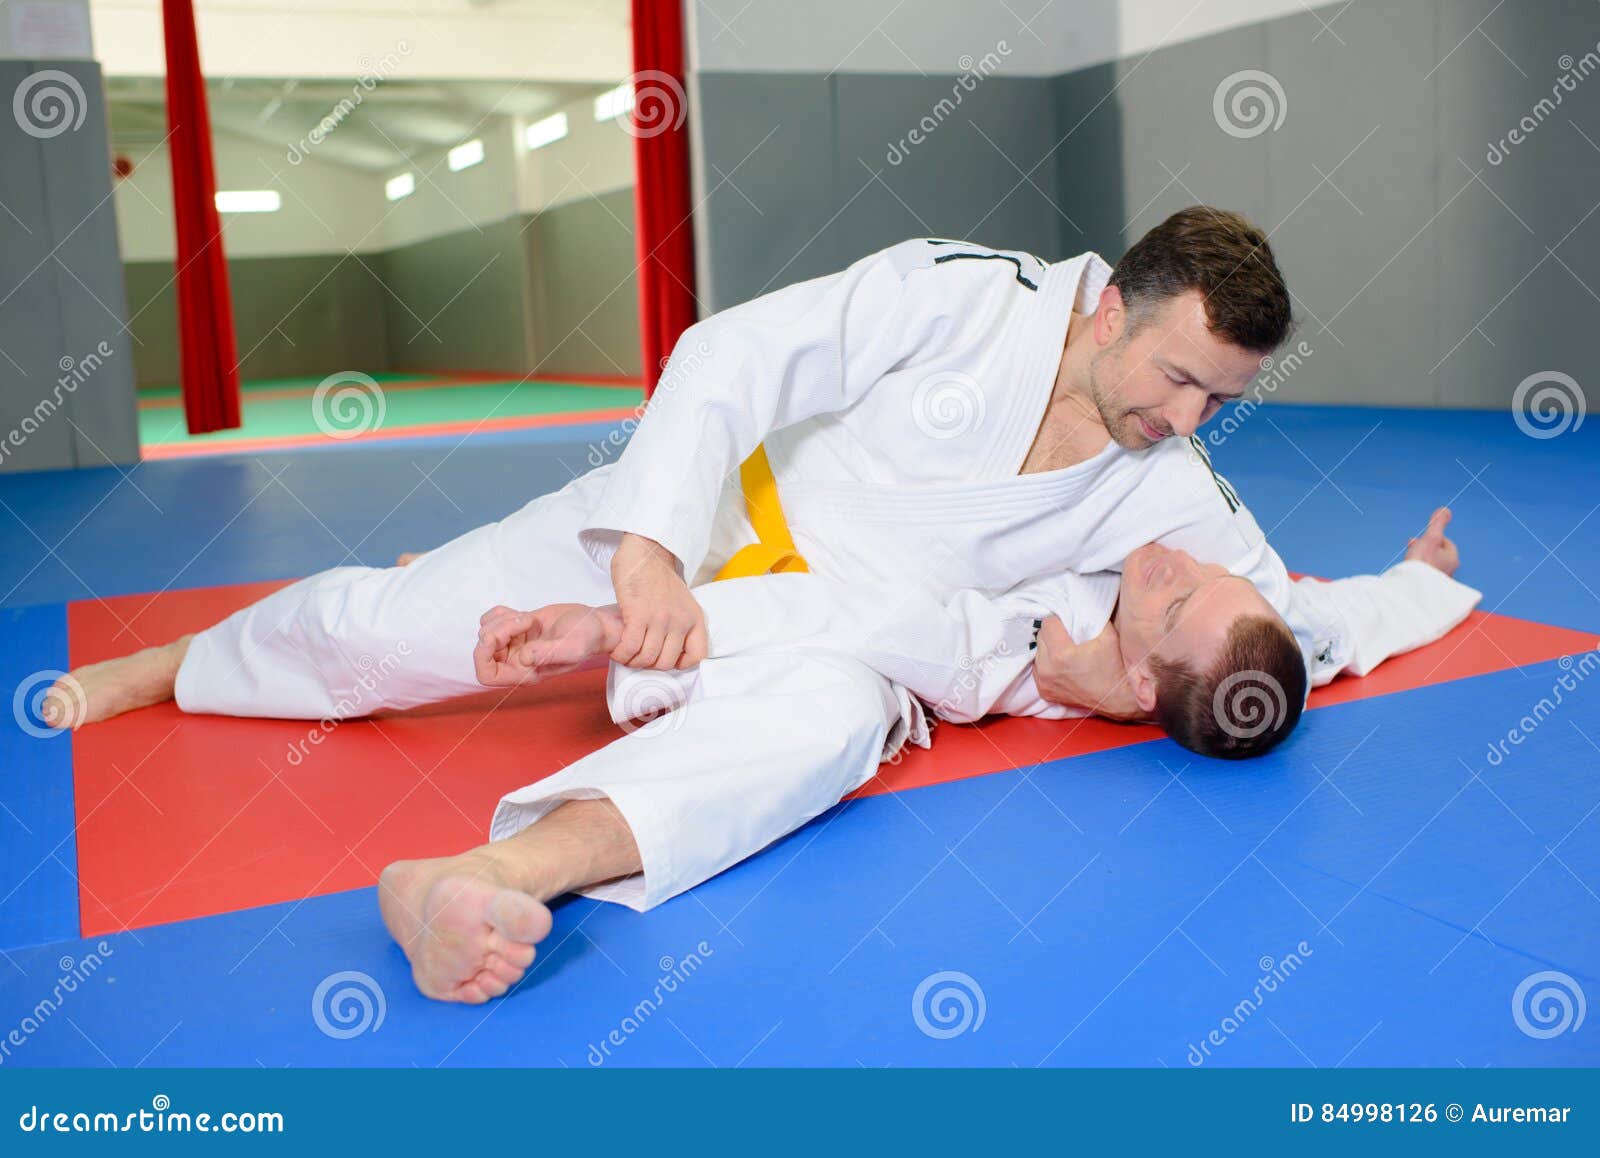 Twee Mensen Op Judomat Stock Foto. Image Of Sport, Schop - 84998126